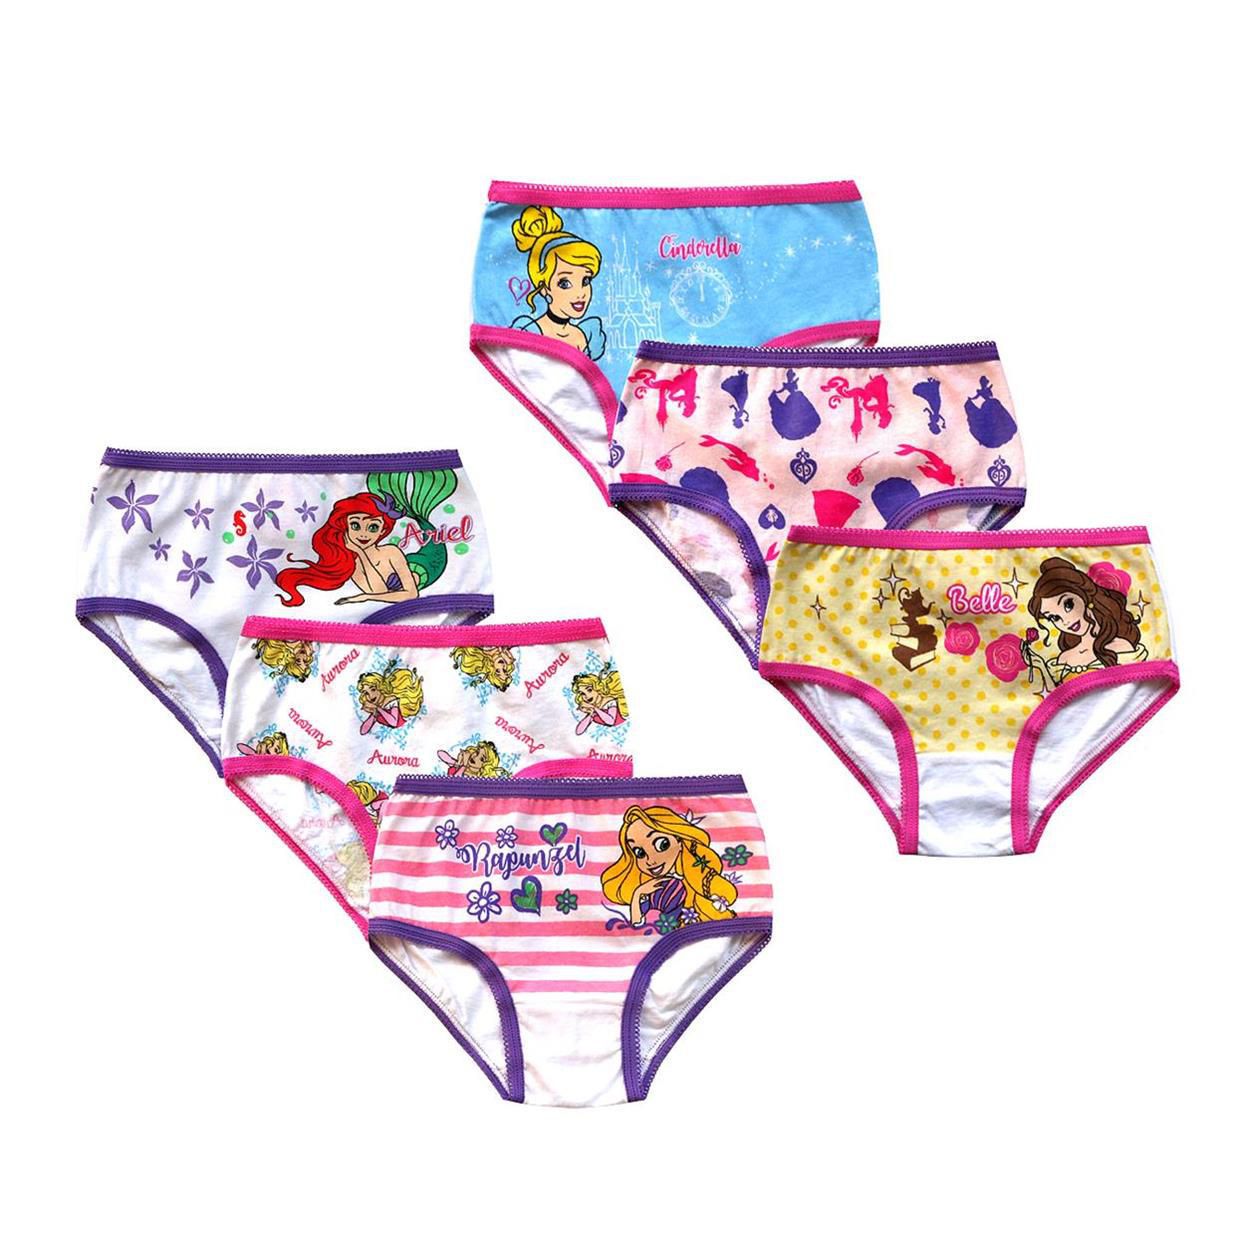 Little Girls' 3 Pack Panties (Toddler/Kid) - Geo Prints